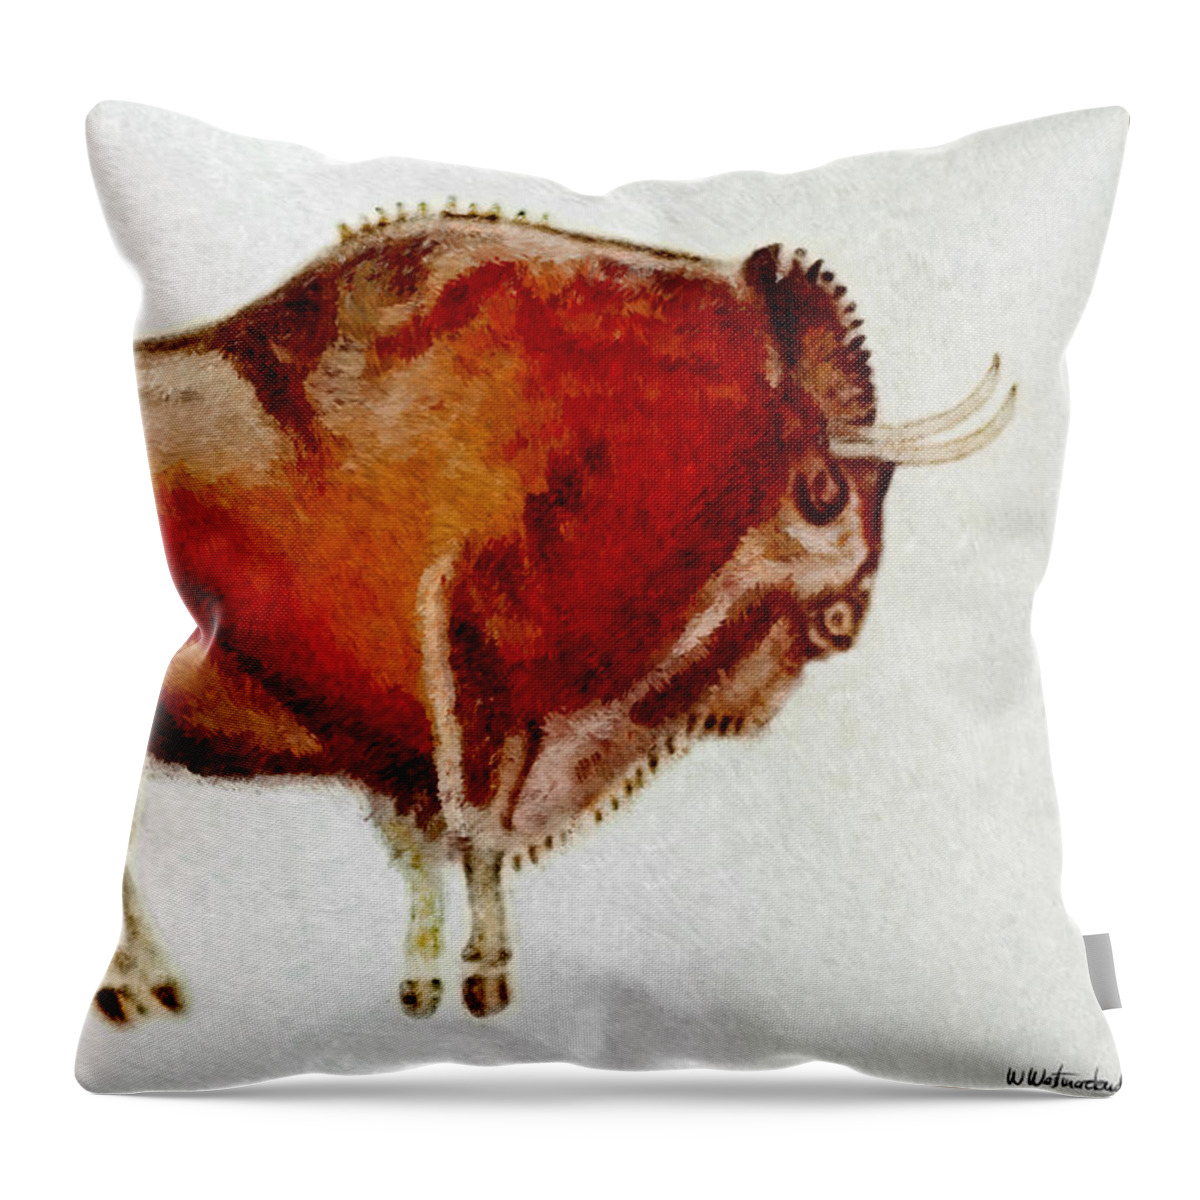 Altamira Throw Pillow featuring the digital art Altamira Prehistoric Bison by Weston Westmoreland